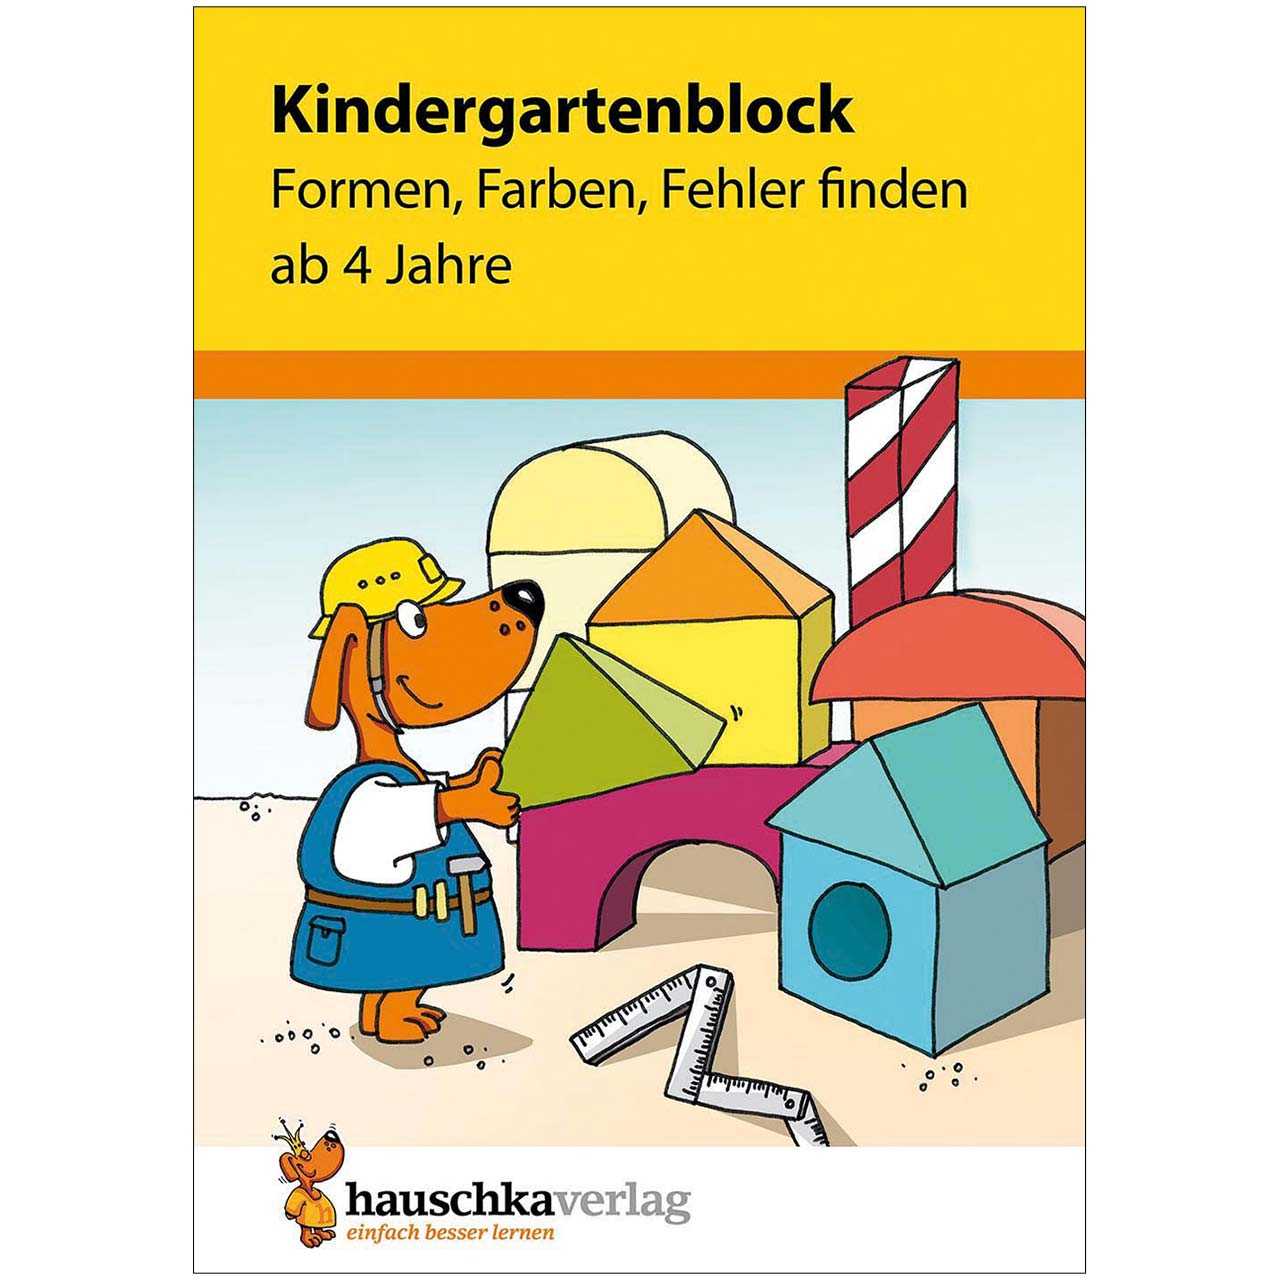 Kindergartenblock „Formen, Farben, Fehler finden“ ab 4 Jahre